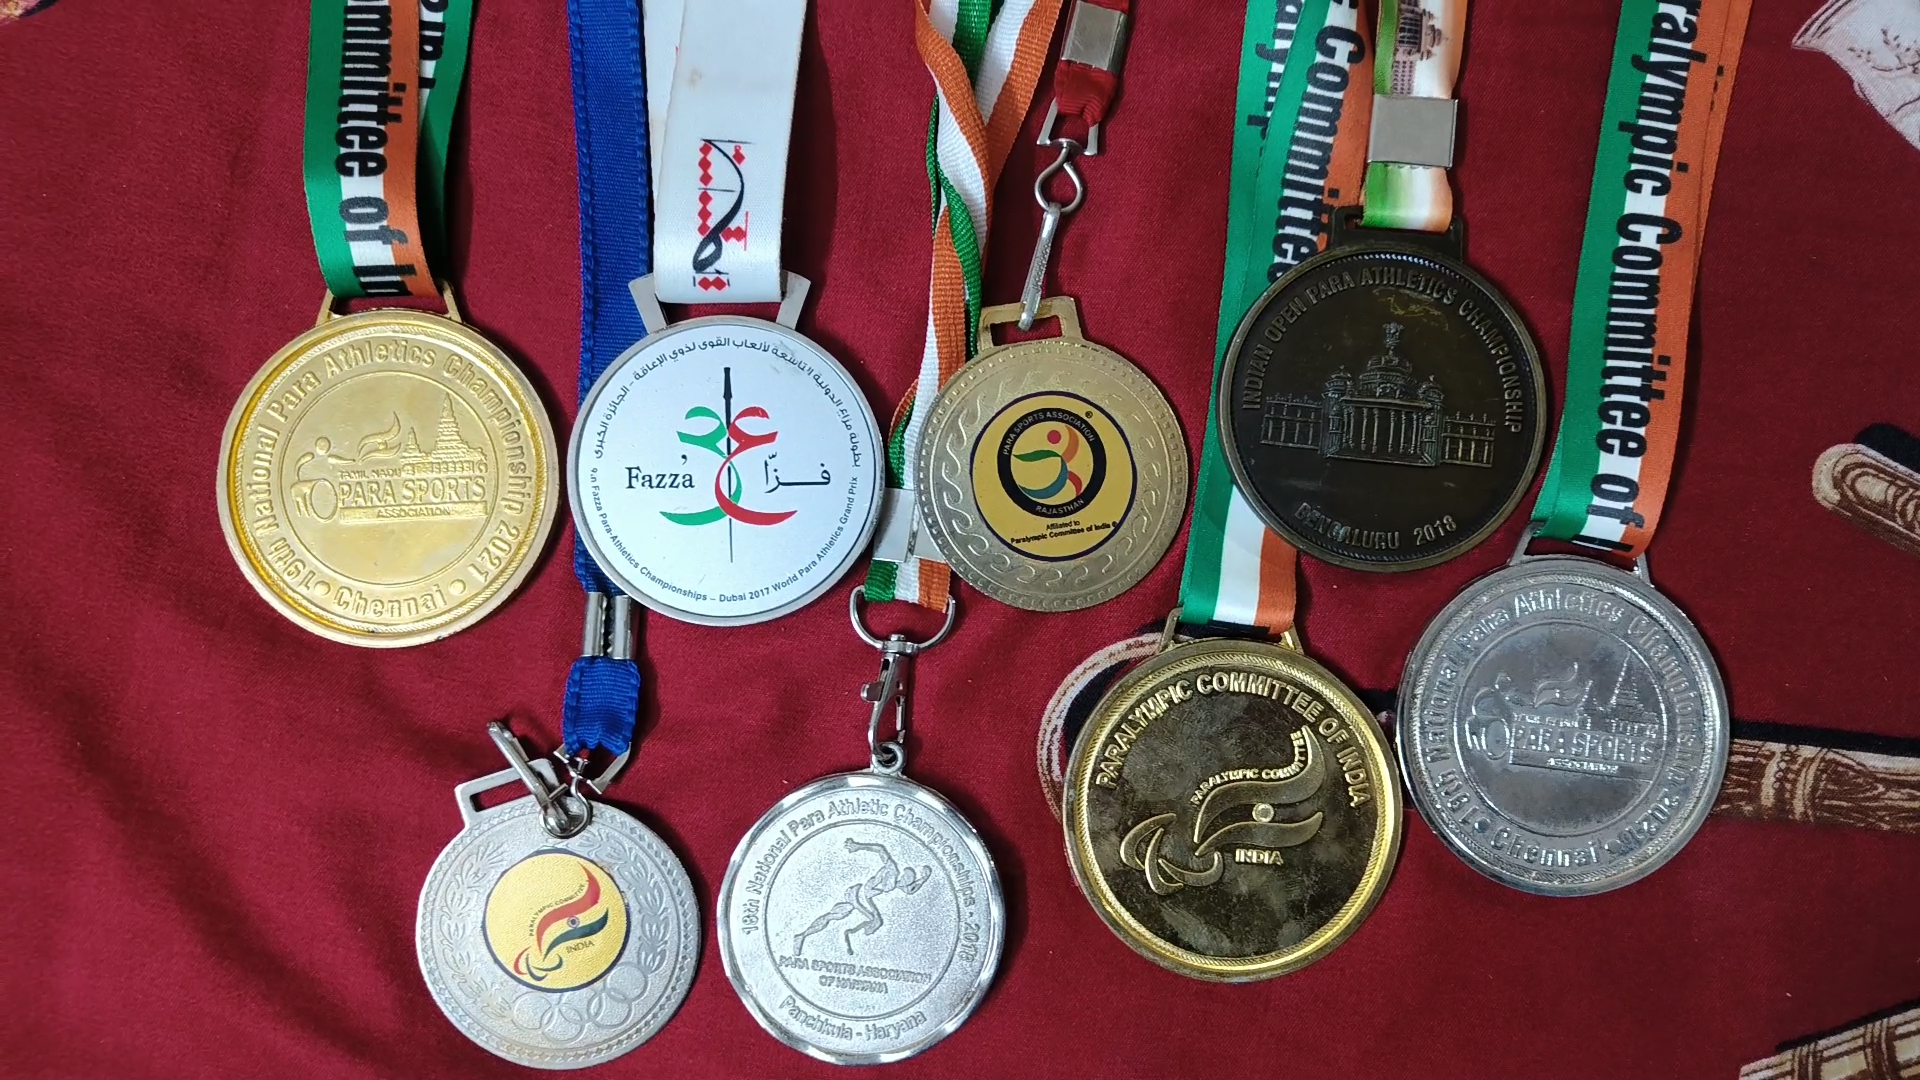 Shatabdi Awasthi Medals